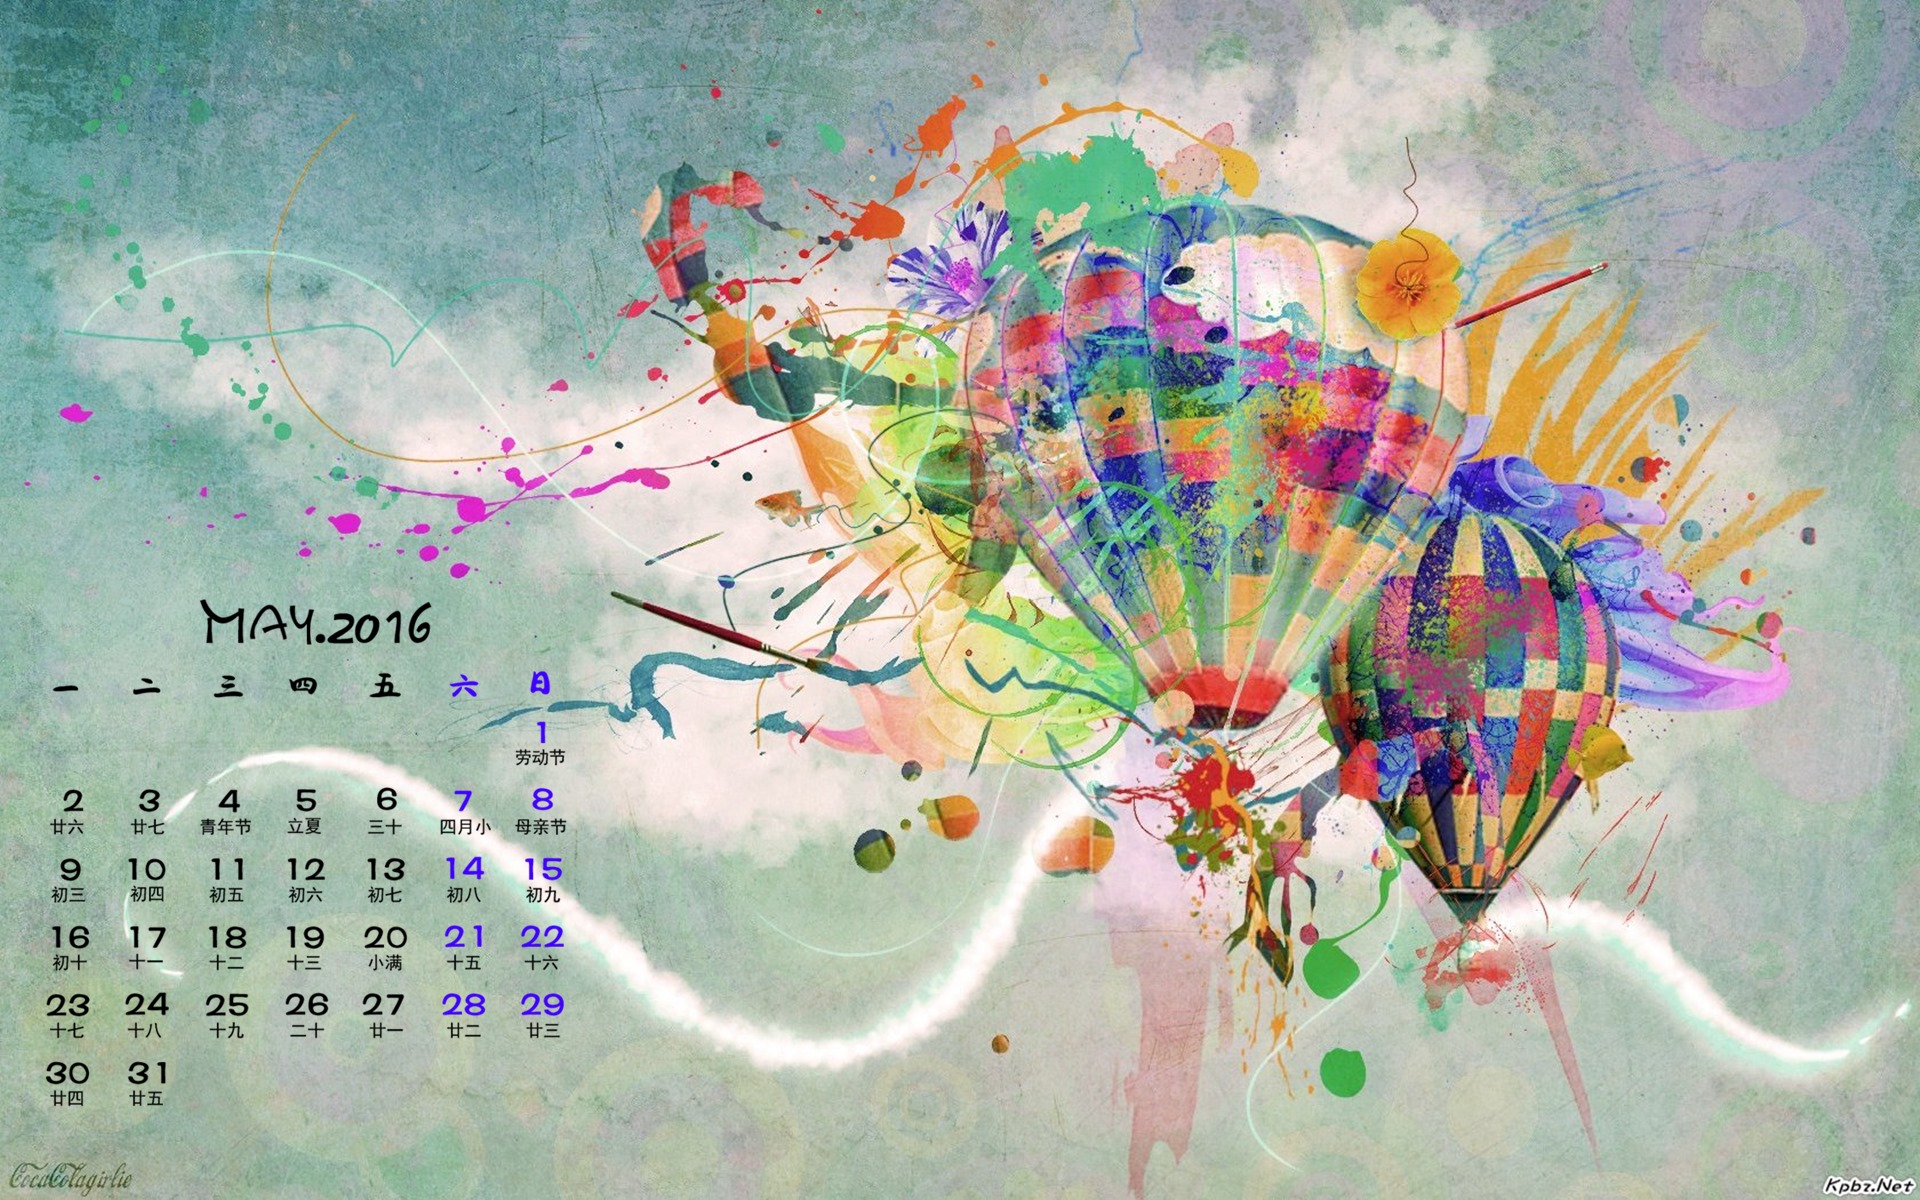 Mai 2016 Kalender Wallpaper (1) #17 - 1920x1200